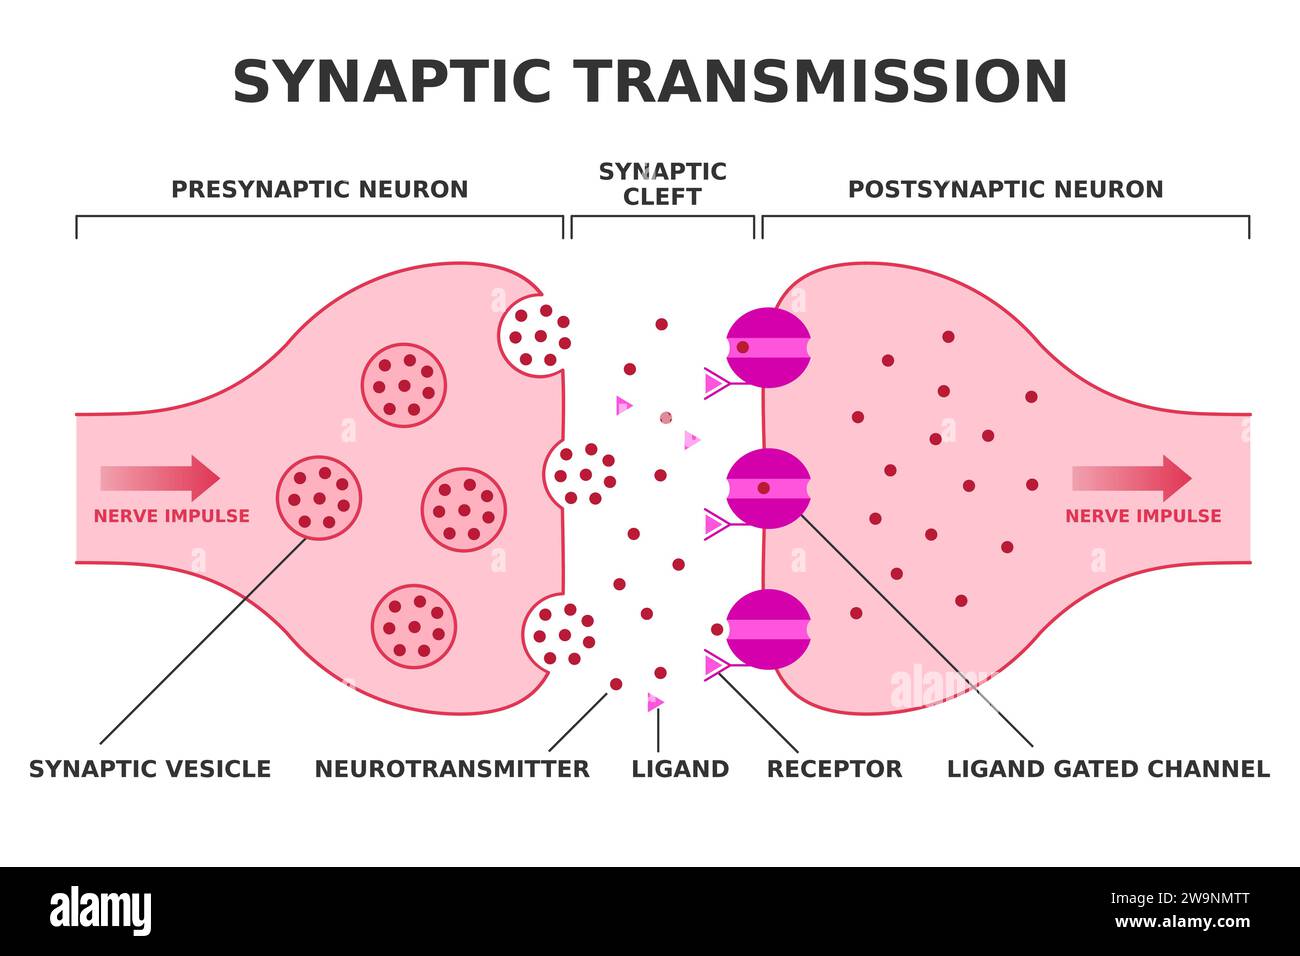 Synaptische Übertragung. Neurotransmission. Nervenimpulsübergang vom präsynaptischen Neuron zum postsynaptischen Neuron. Neurotransmitter-Freisetzung. Vektor Stock Vektor